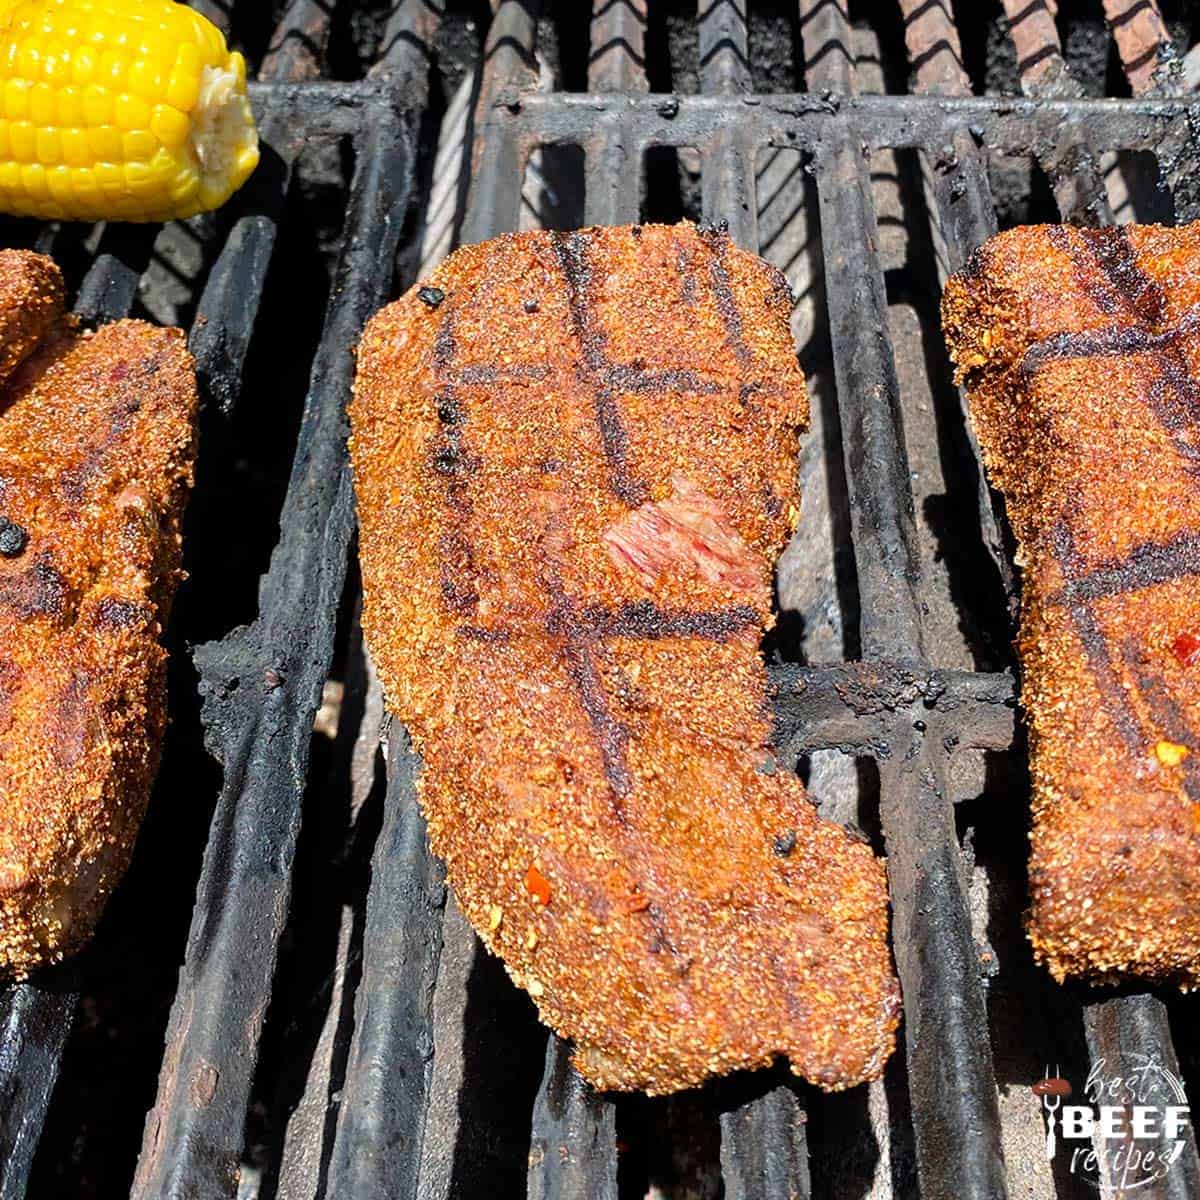 Three seasoned steaks on the grill